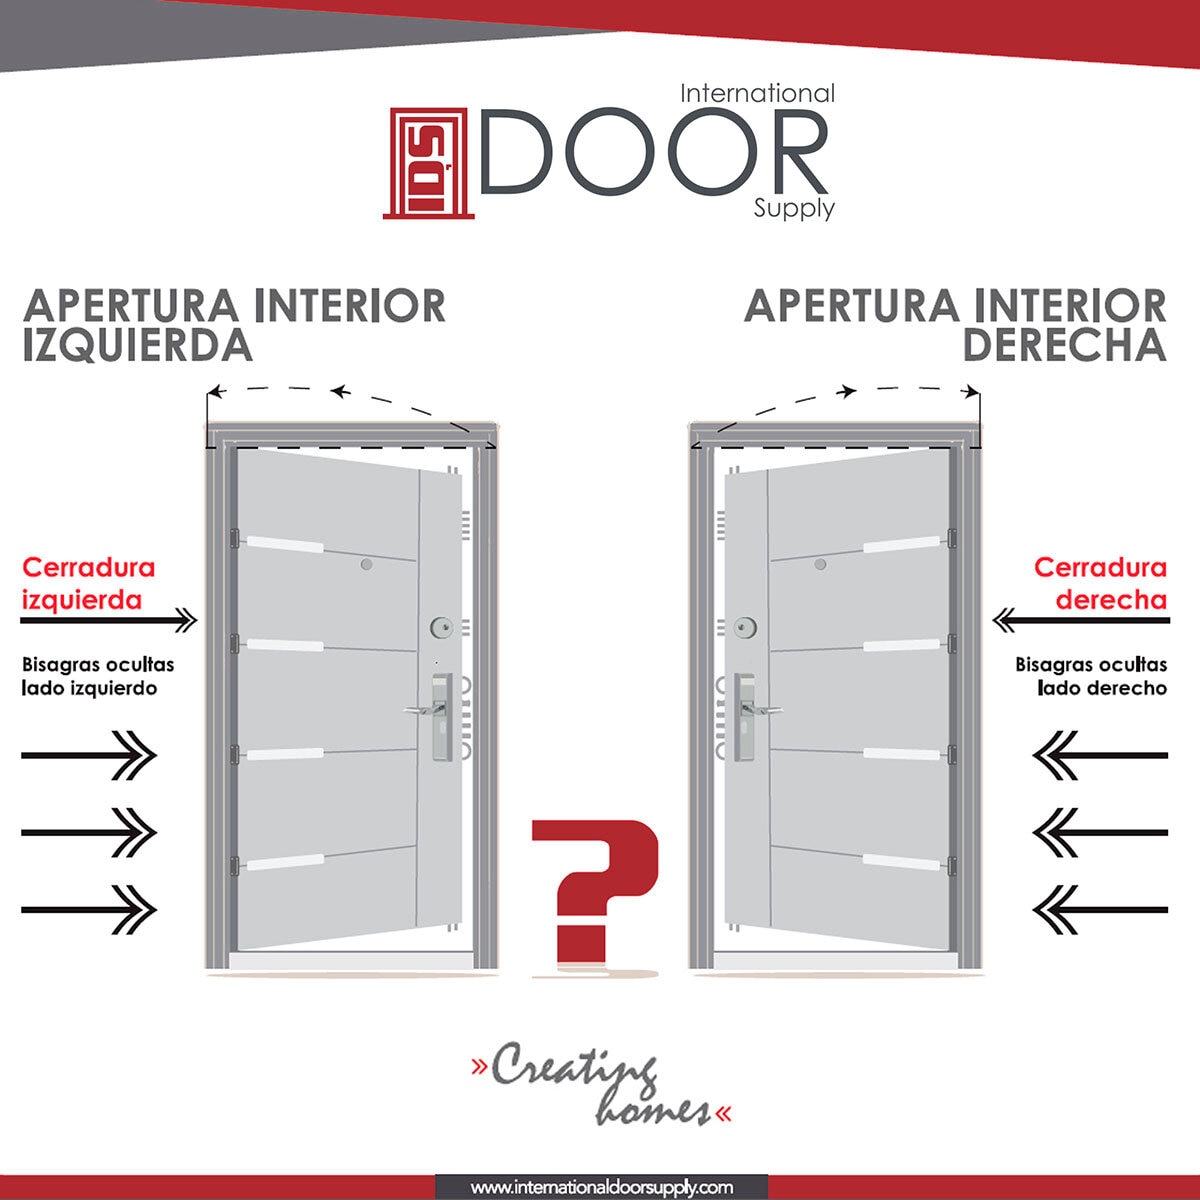 International Door Supply, Puerta de Alta Seguridad Condesa con Fijo Izquierda